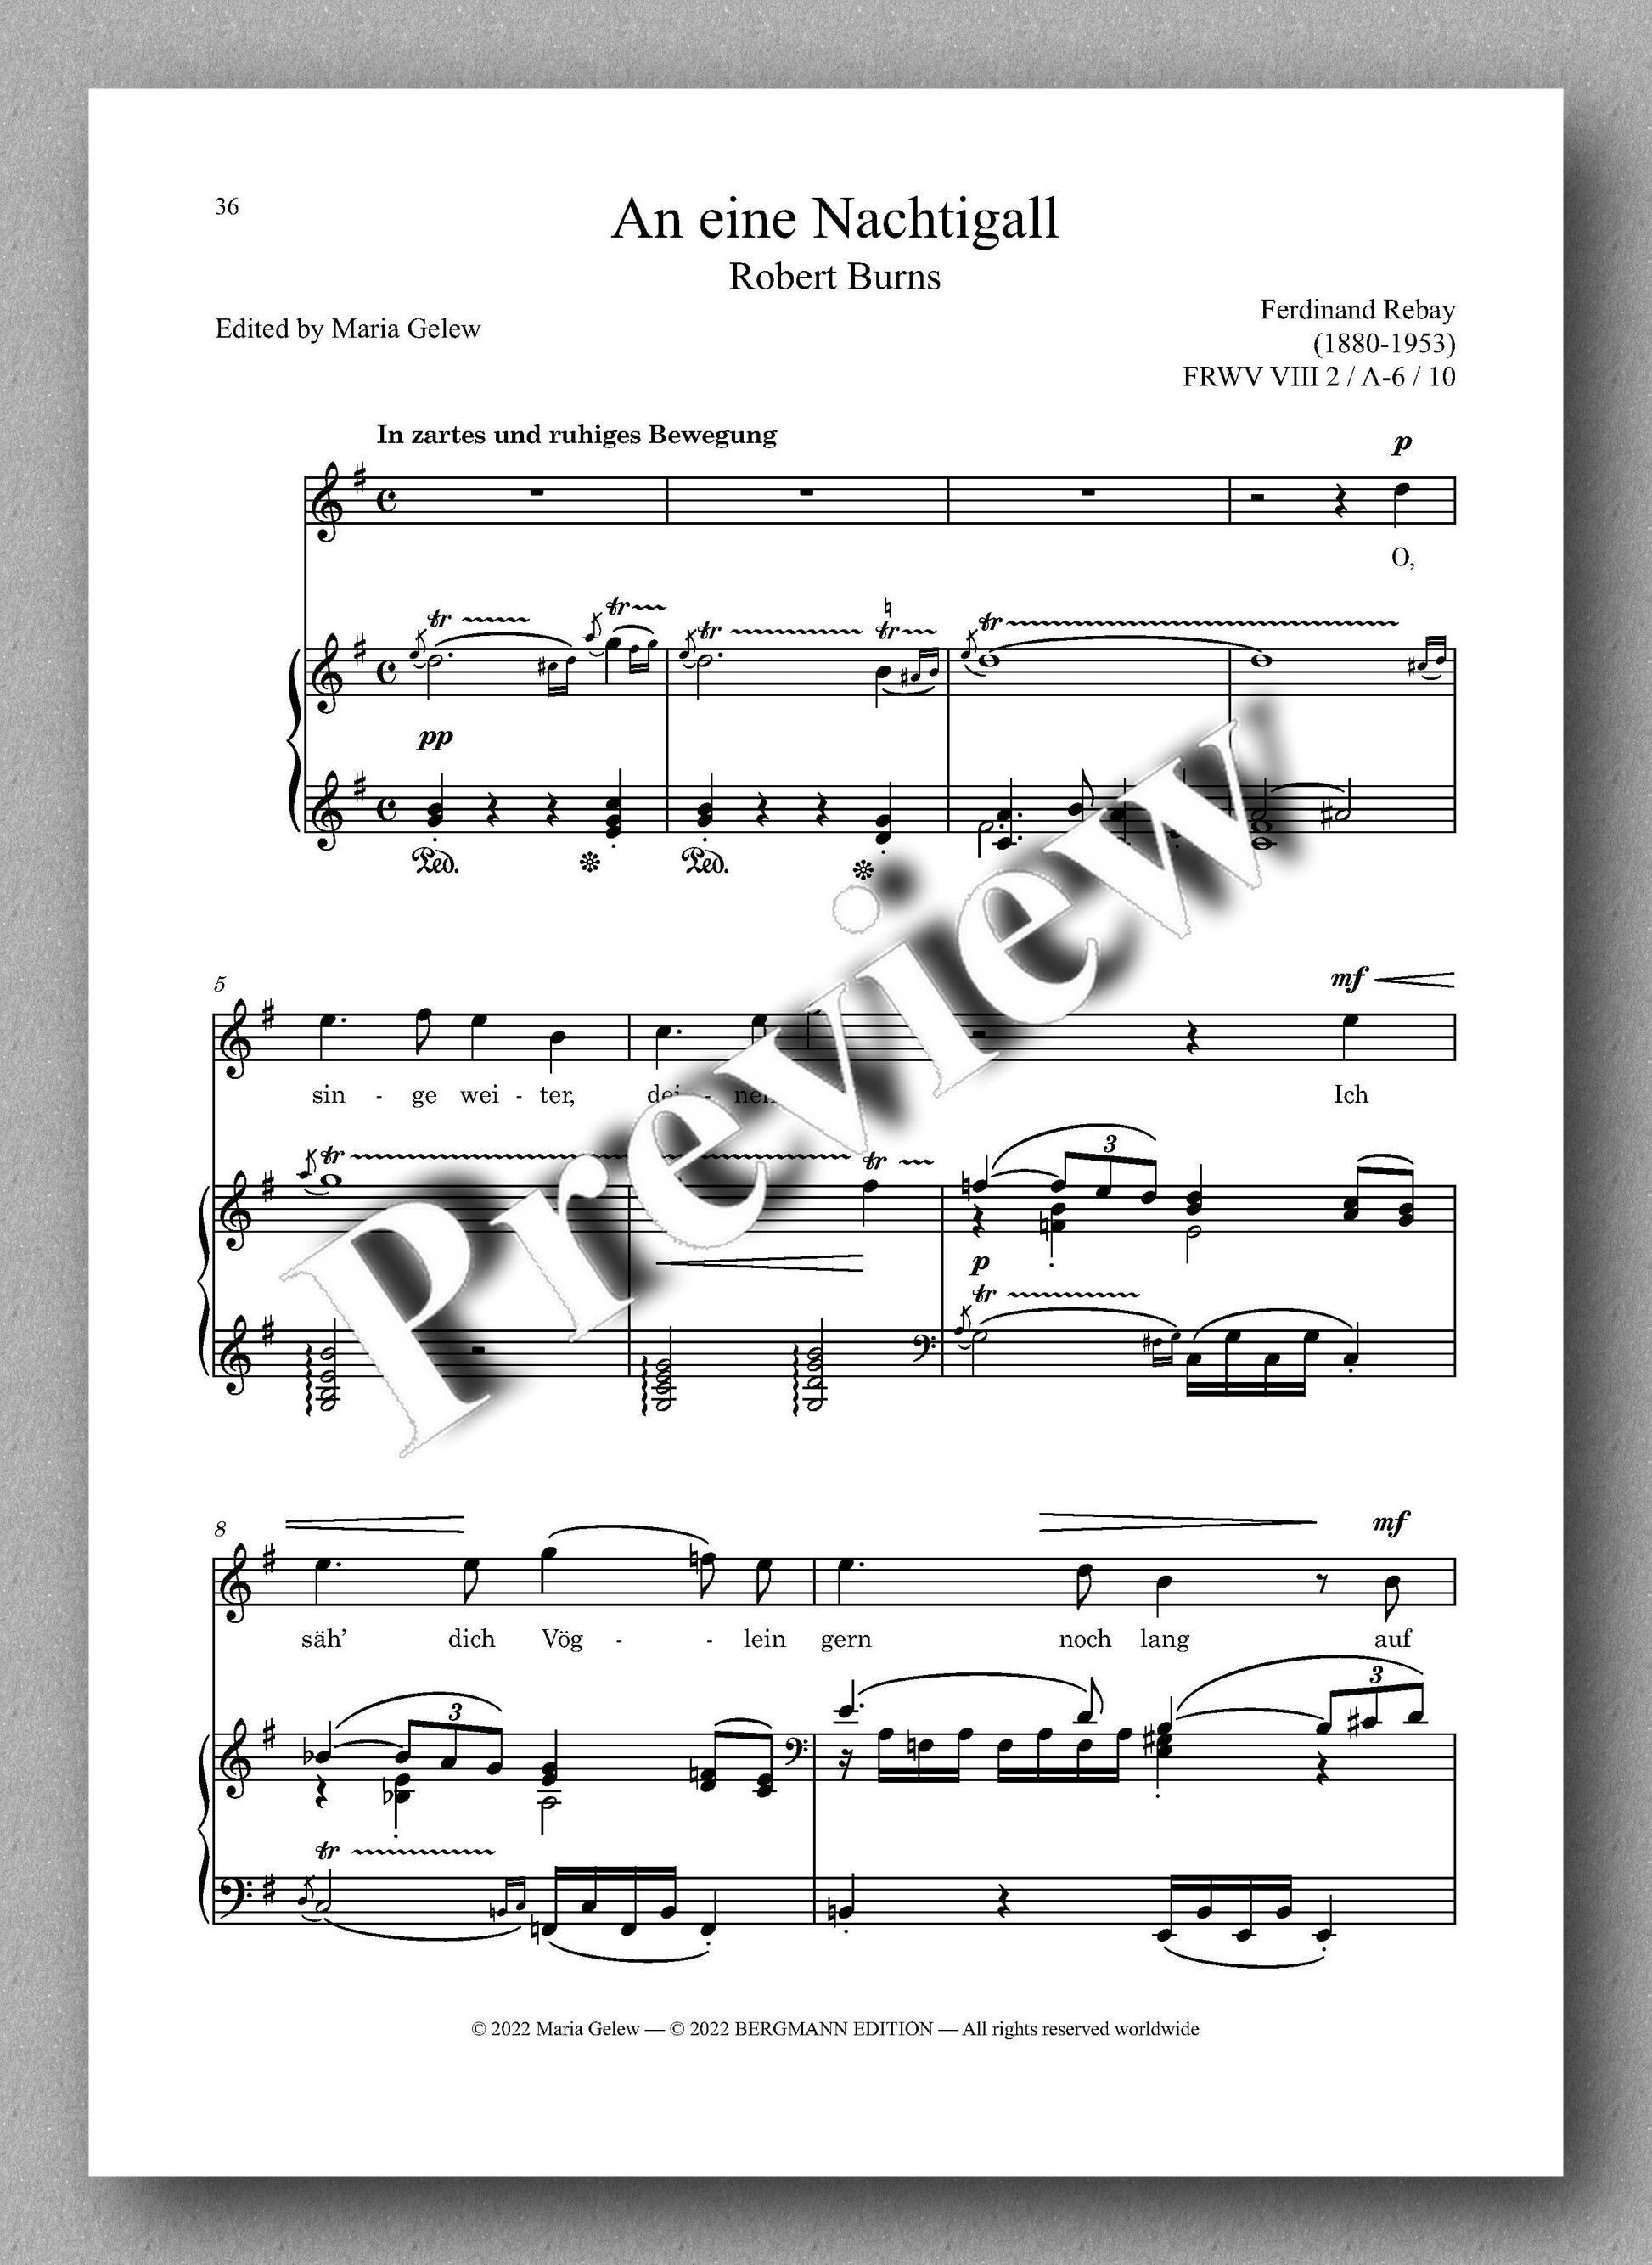 Ferdinand Rebay, Lieder nach Gedichten von Robert Burns (1759-1796) - preview of the music score 4